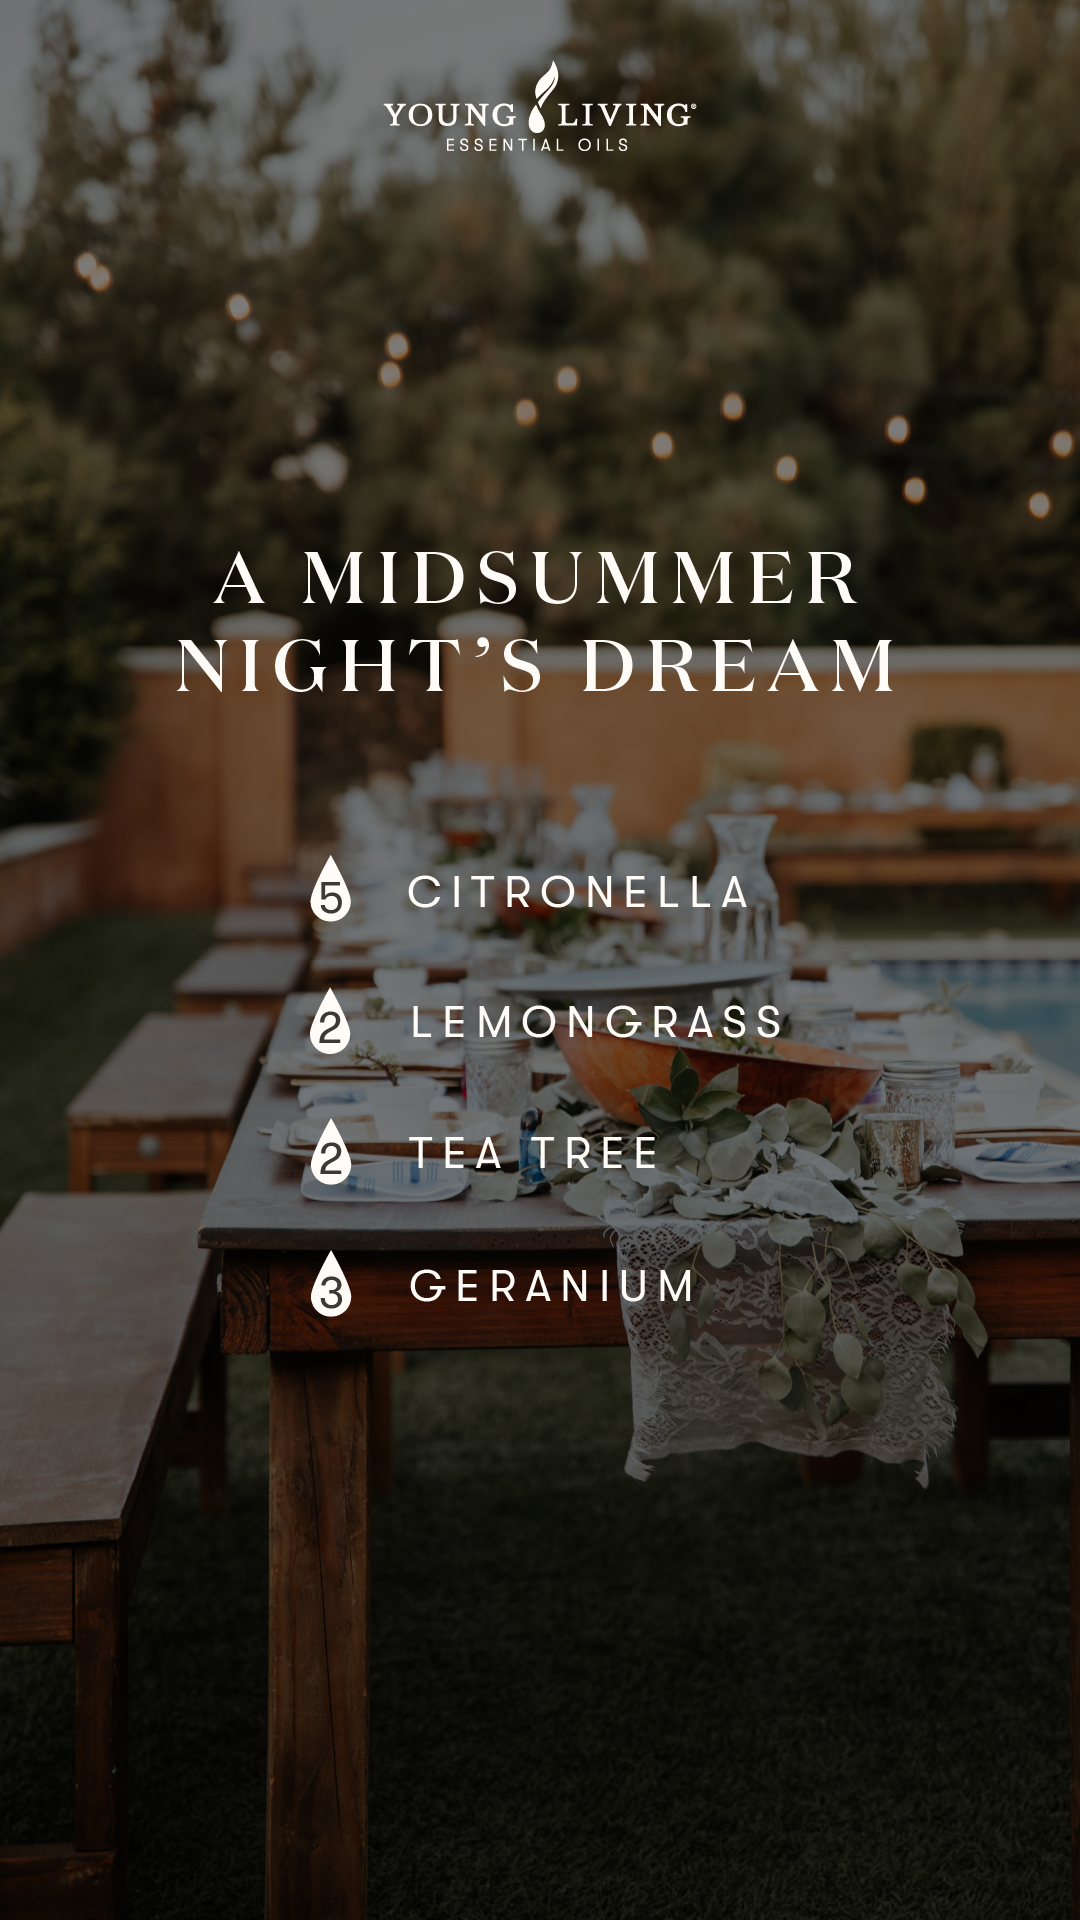 A midsummer night's dream diffuser blend